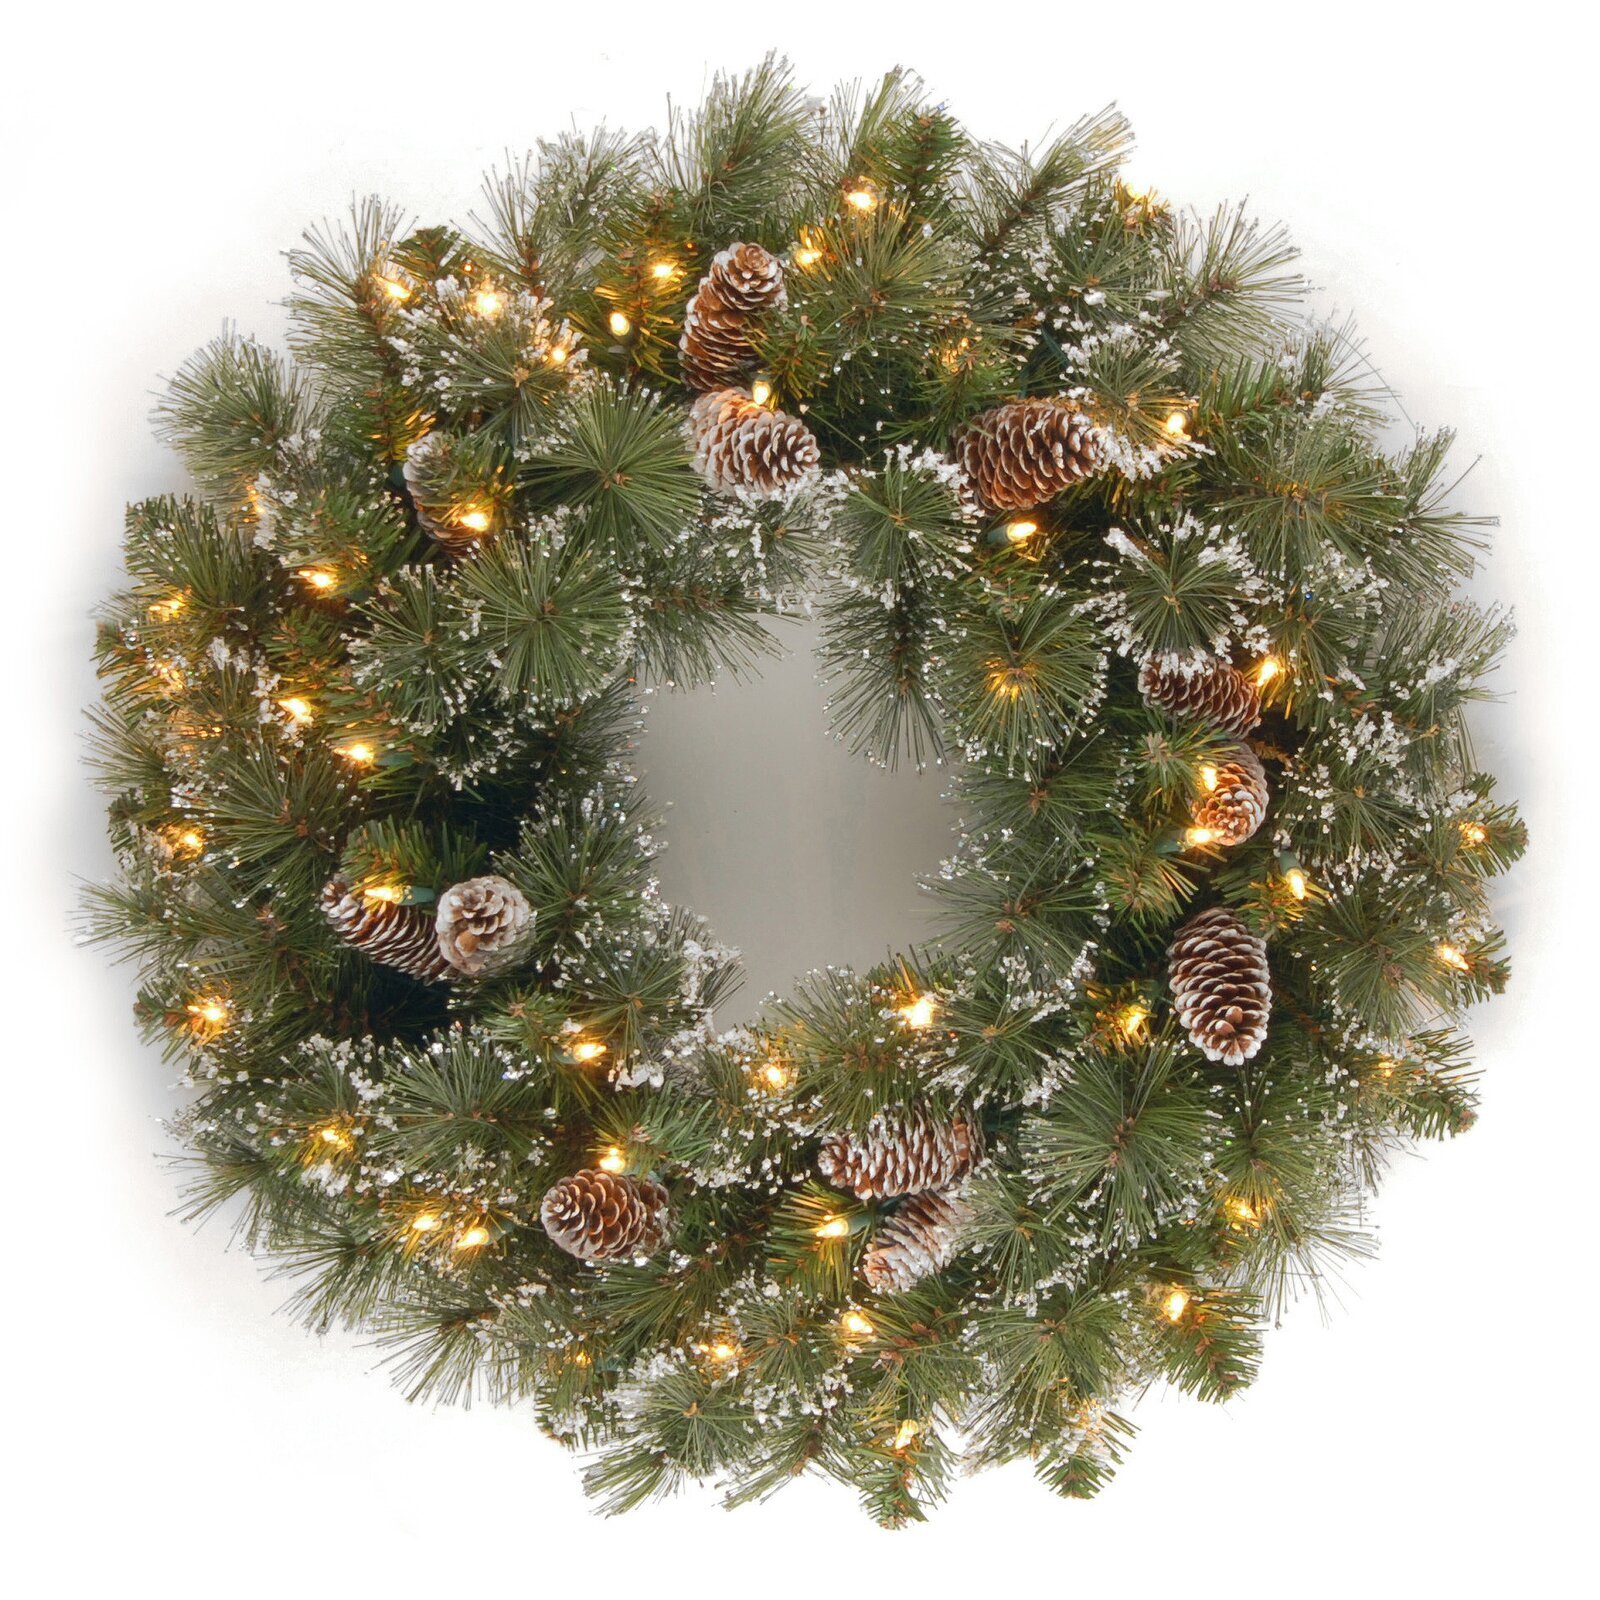 Winter/Christmas front door wreaths